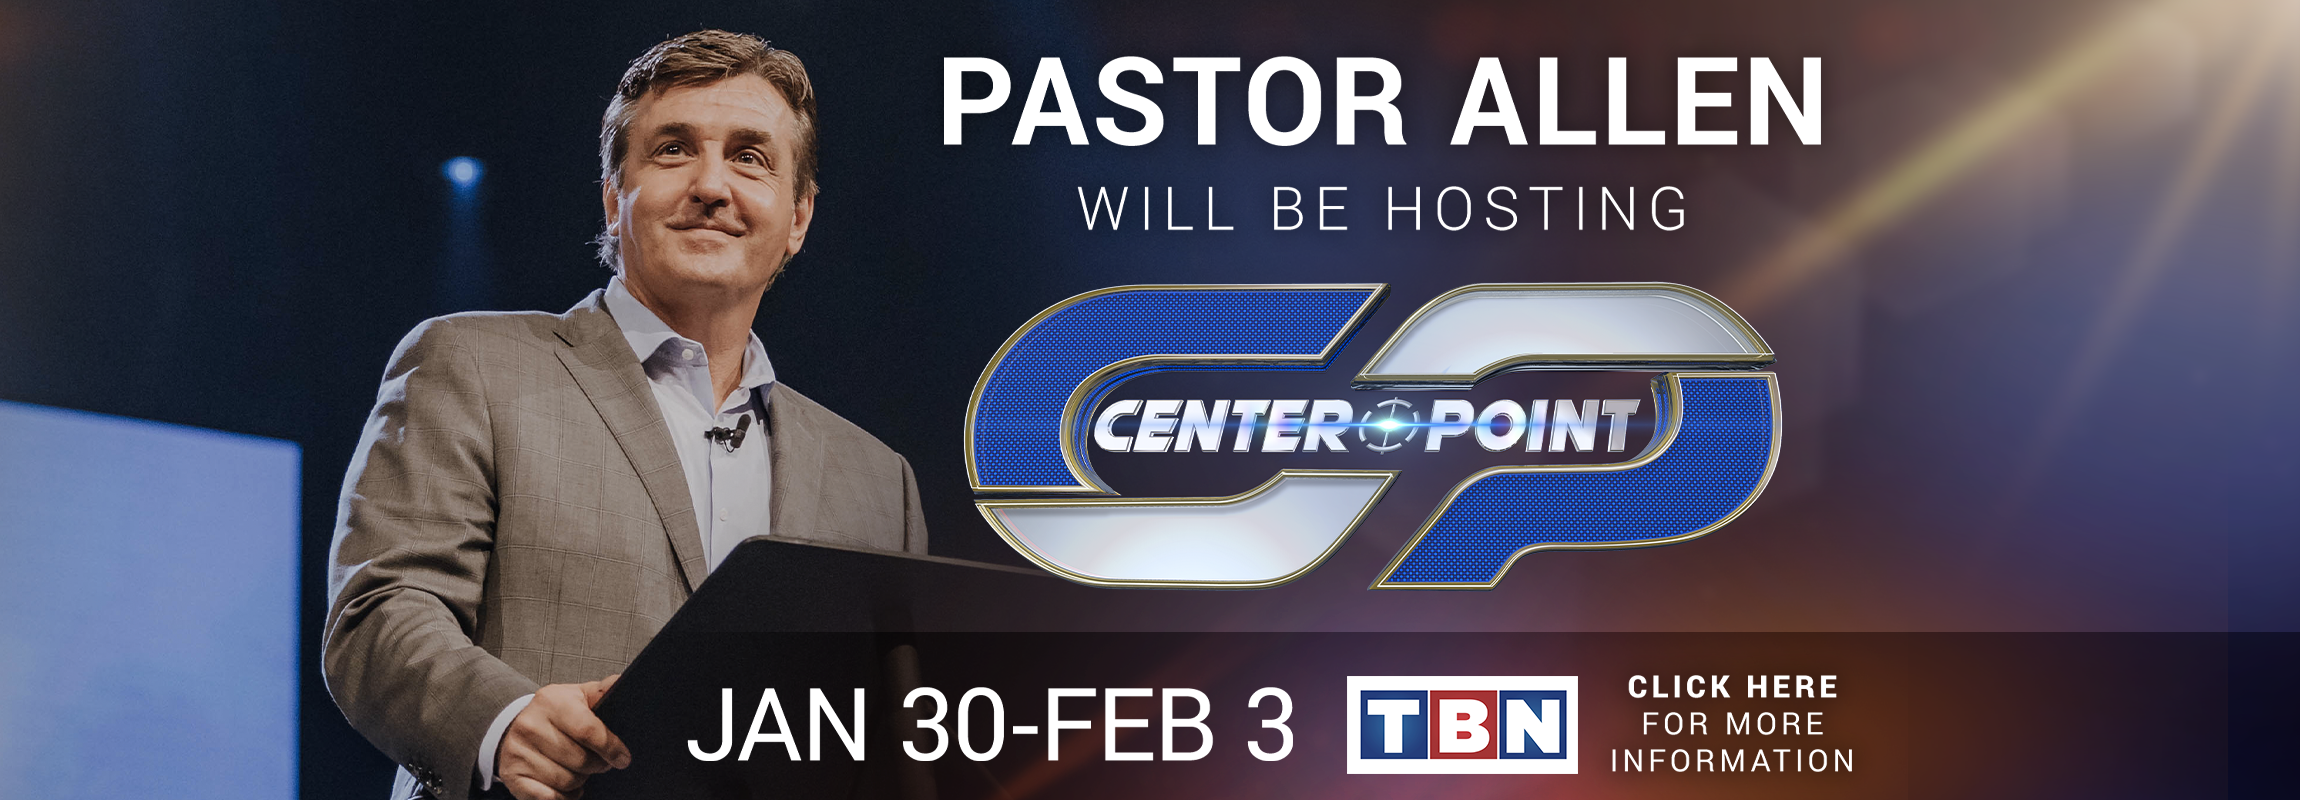 Pastor Allen Hosts TBN Centerpoint